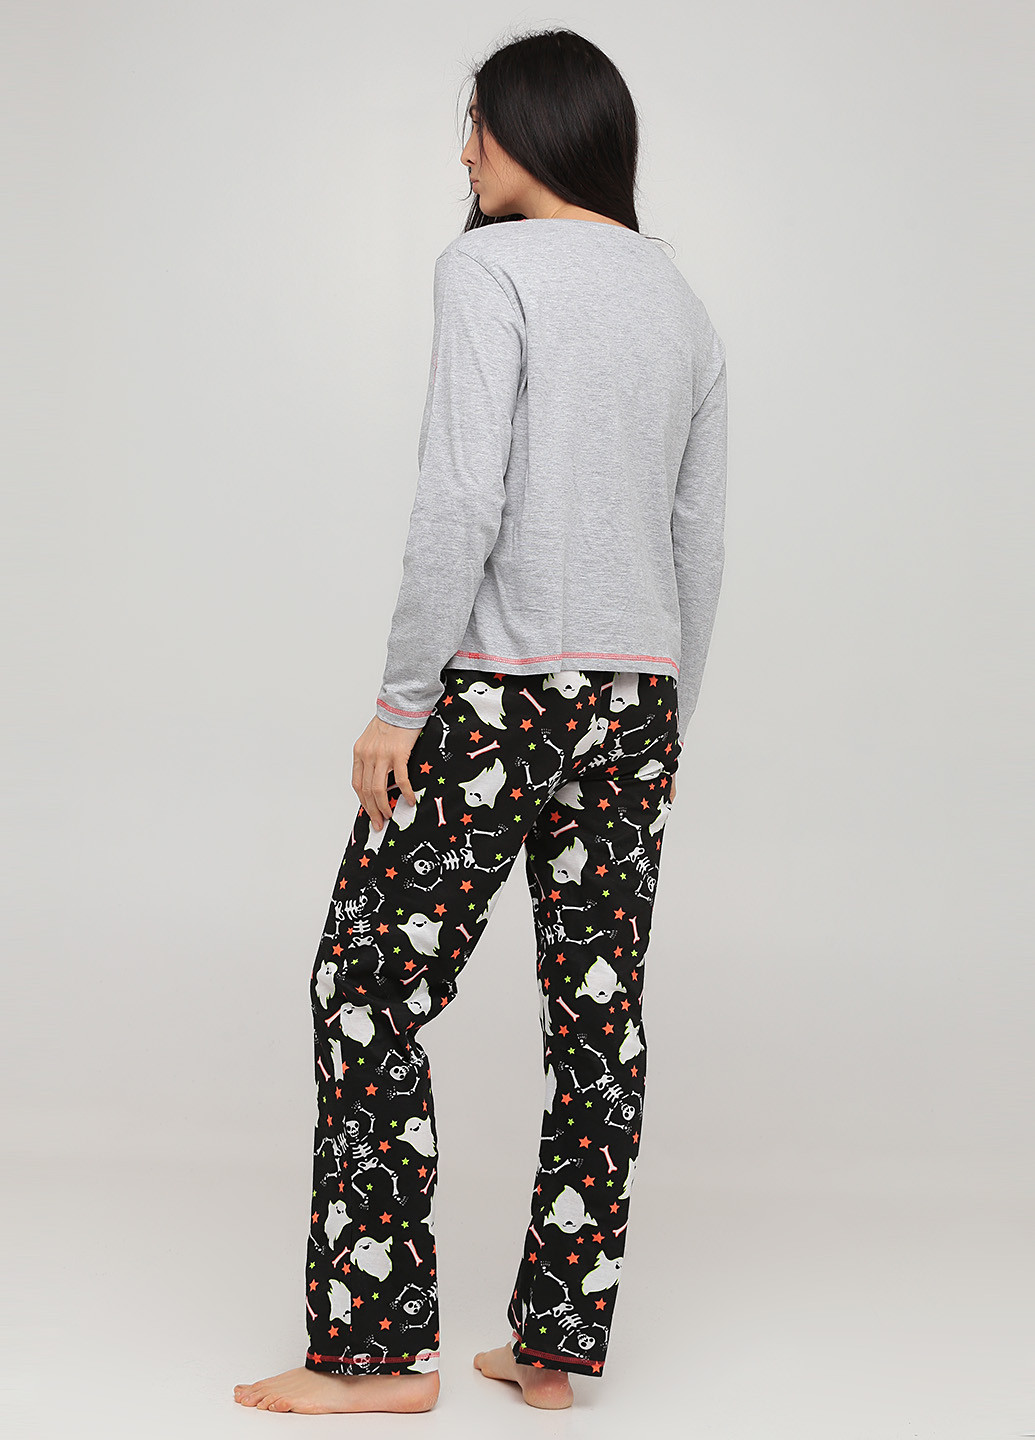 Комбинированная всесезон пижама (лонгслив, брюки) лонгслив + брюки Studio